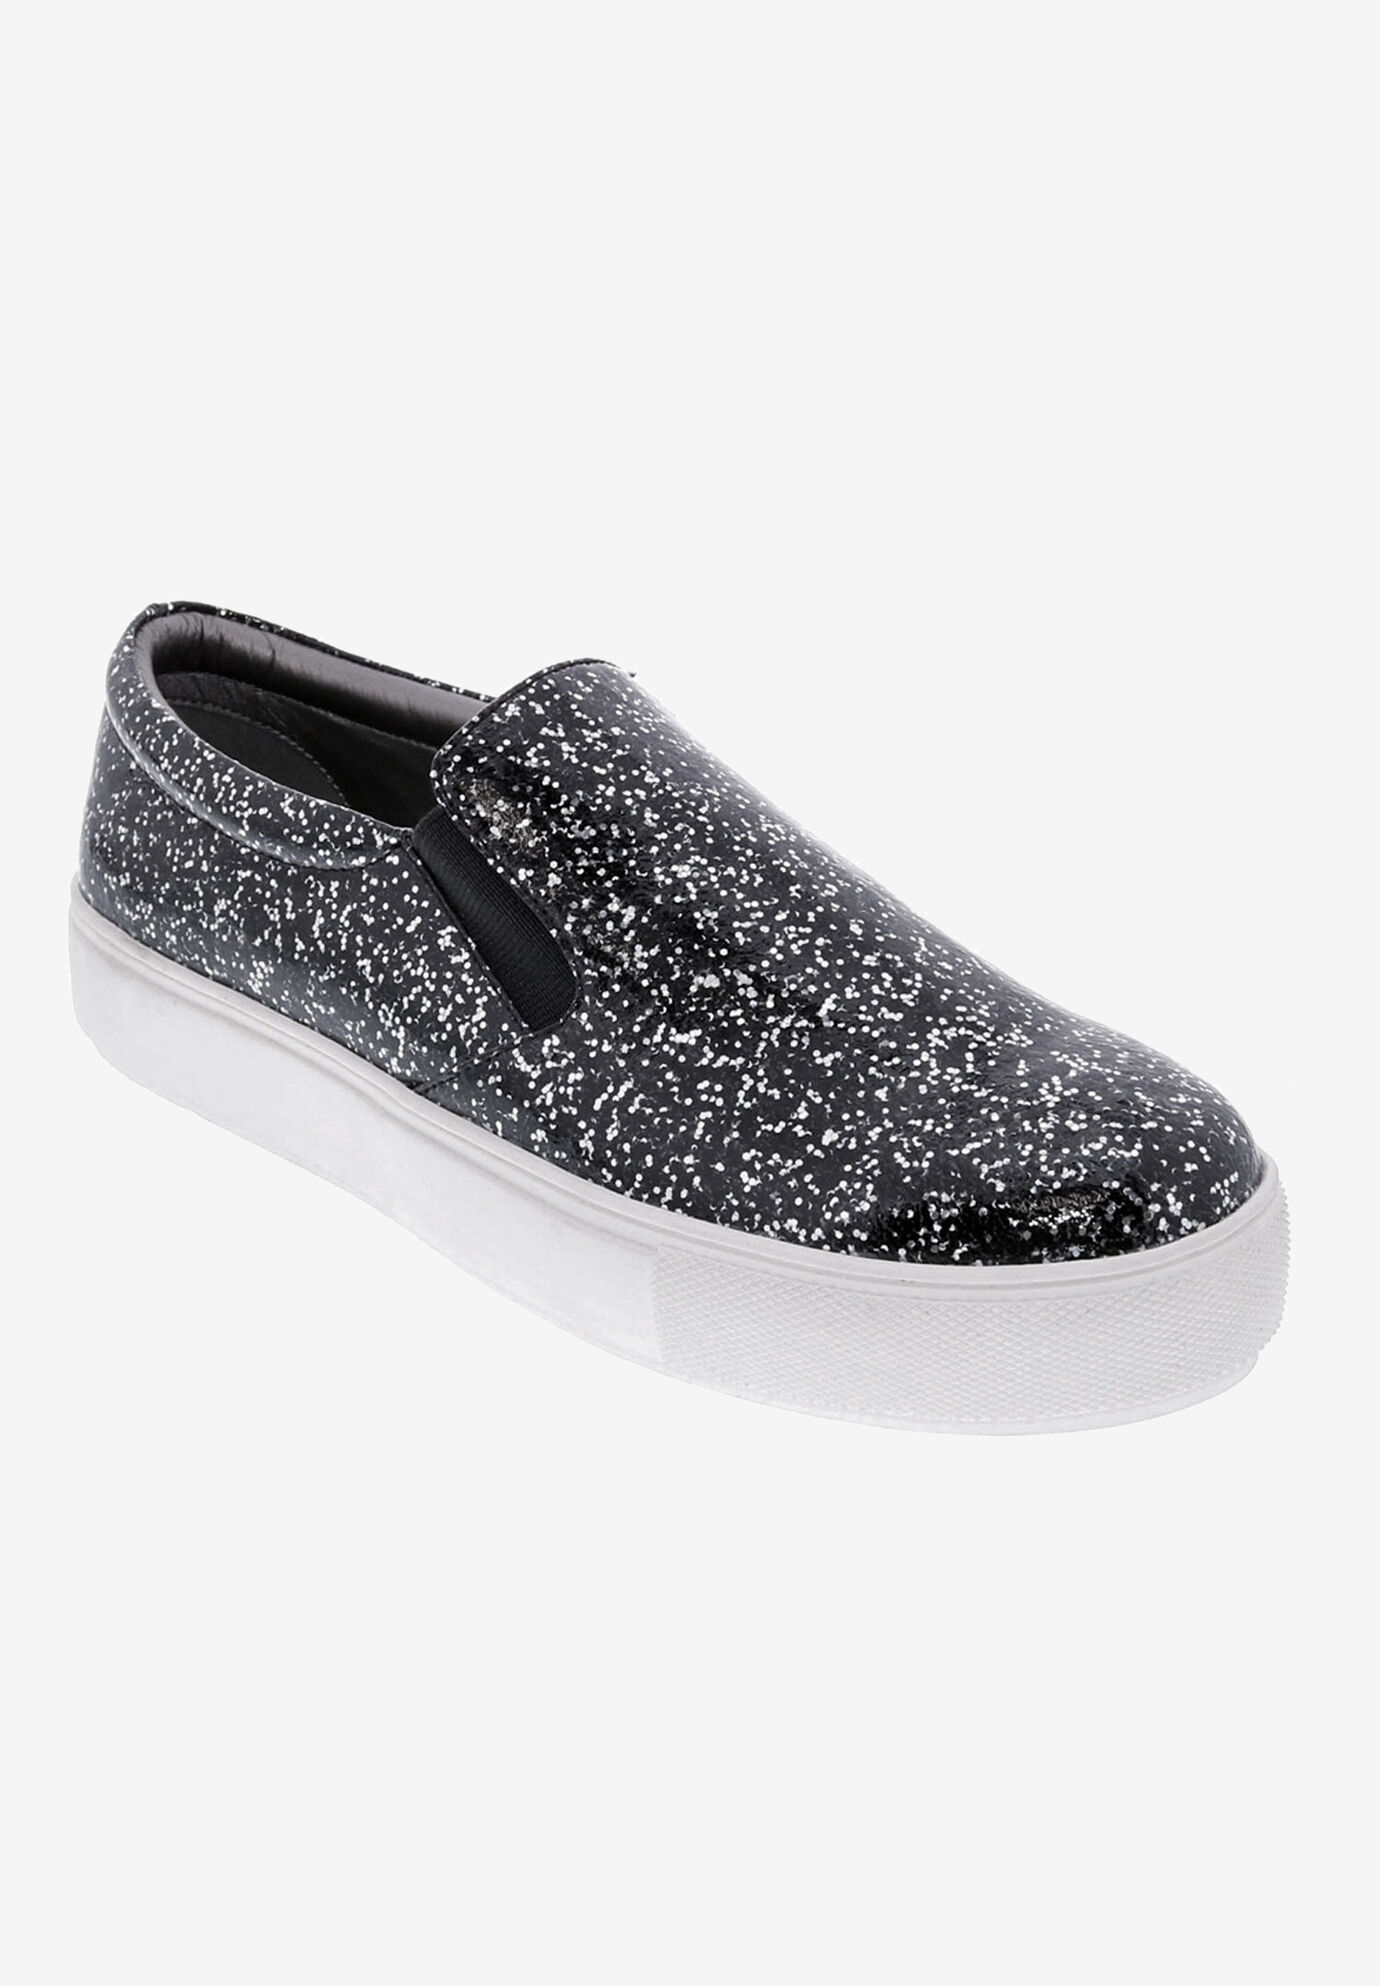 Wide Width Women's Accent Slip On Sneaker by Bellini in Black Sparkle (Size 8 W)